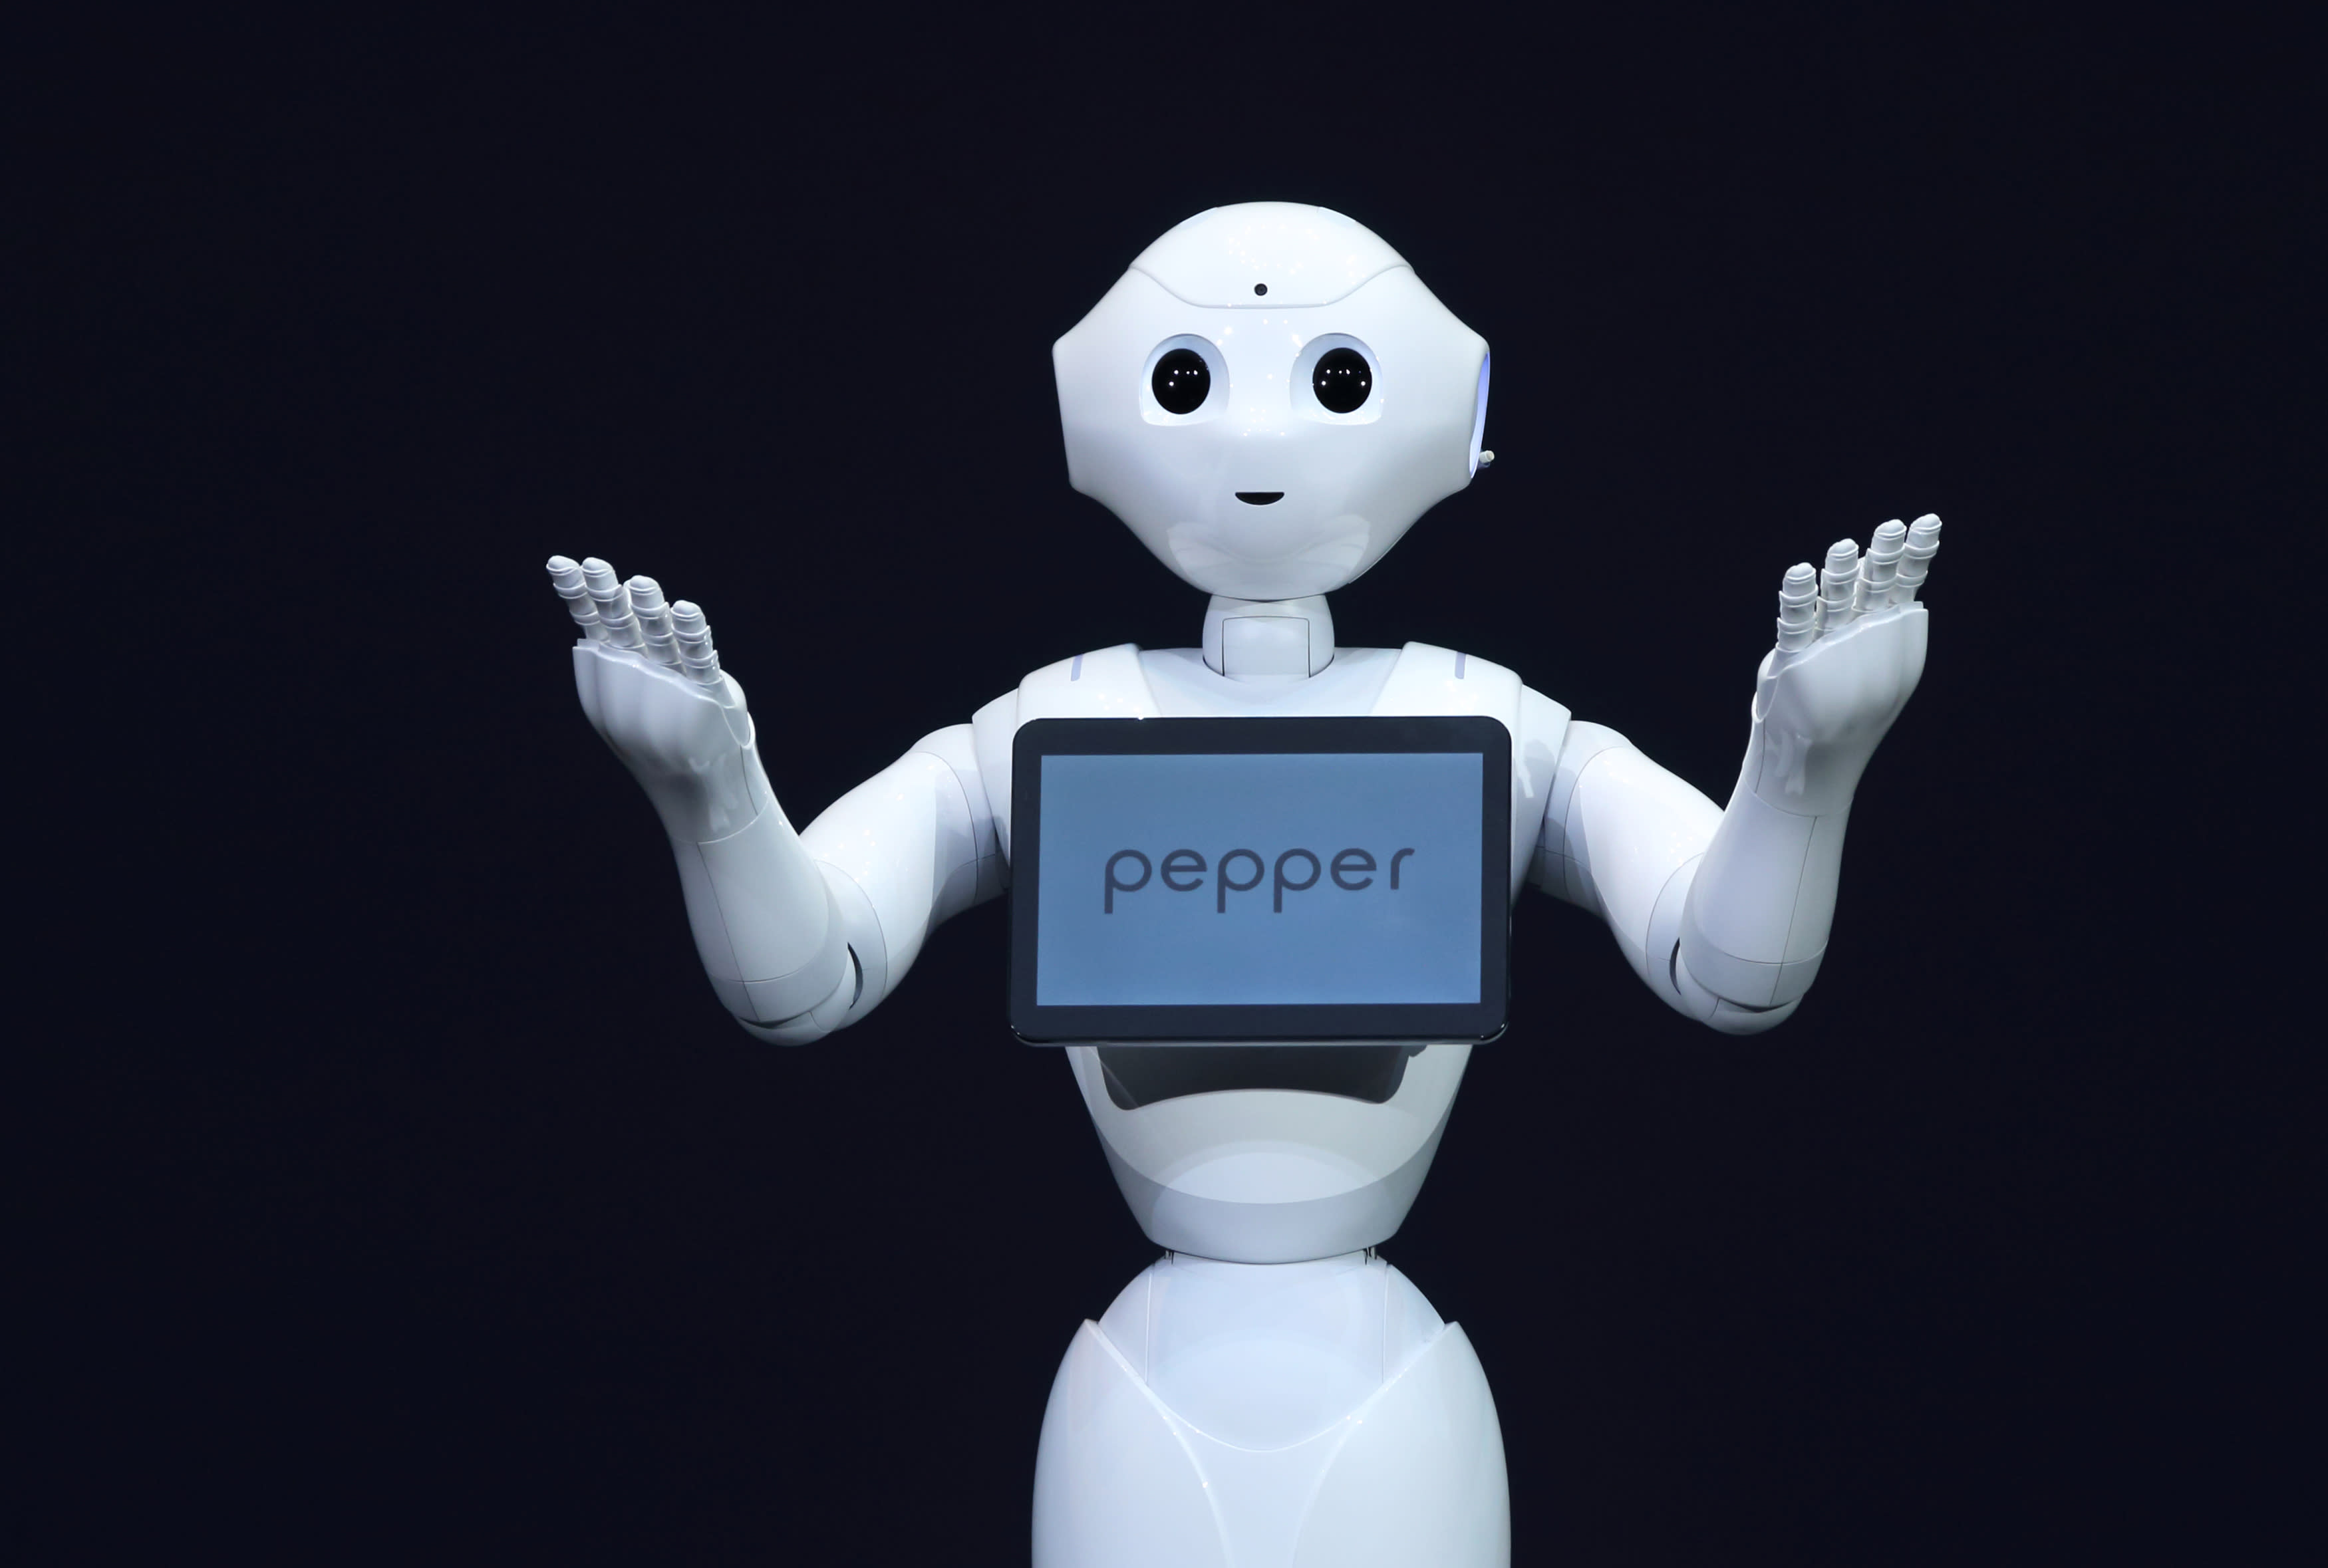 Робот обсуждай. Дисплей робота. Робот с экраном. Робот Пеппер. Робот с экраном вместо лица.